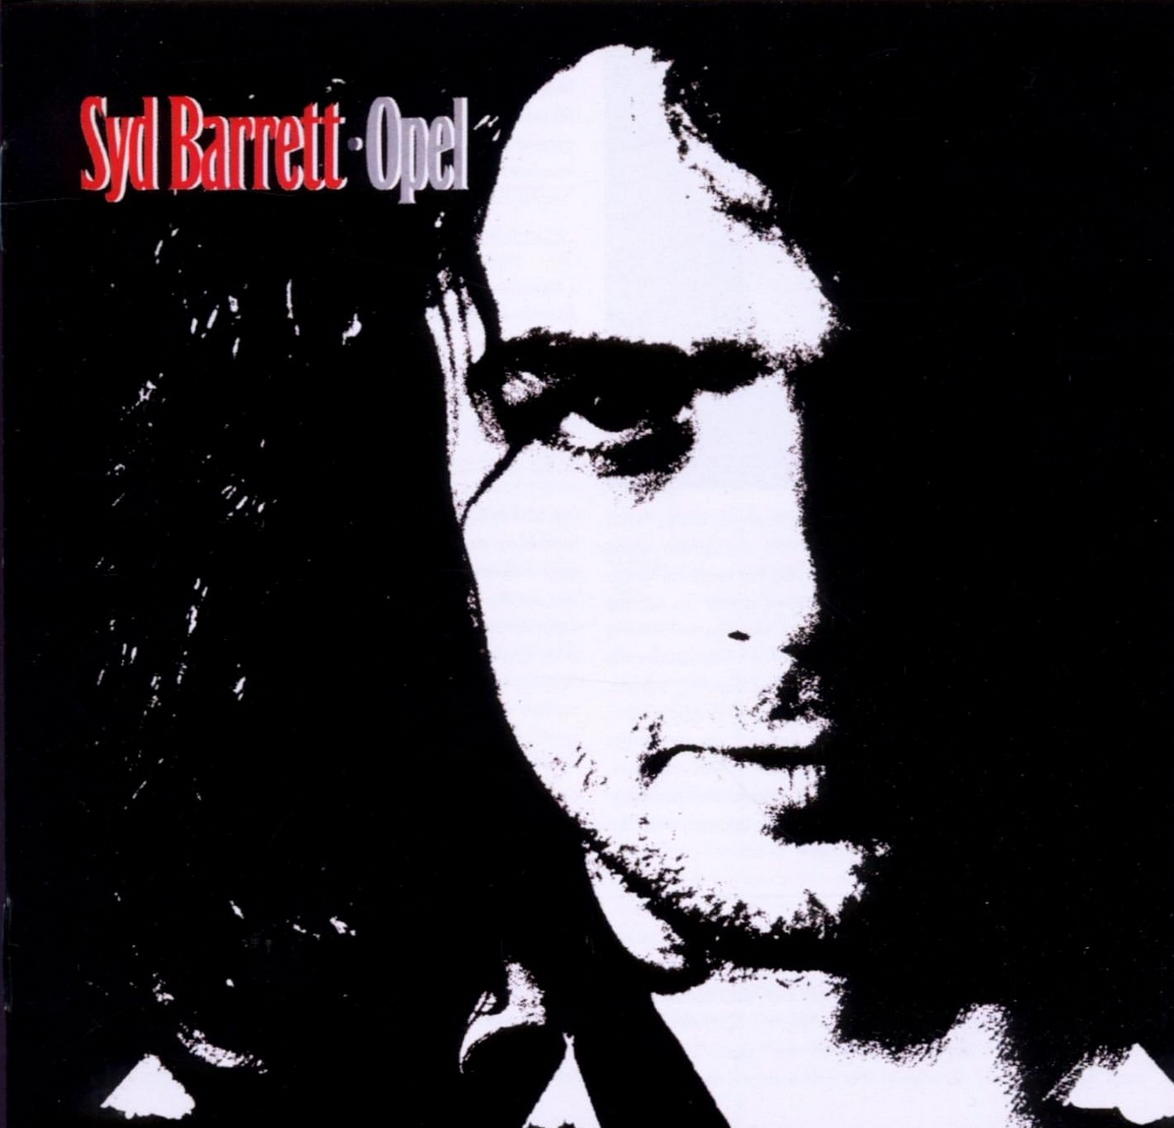 Syd Barrett 'Opel' LP